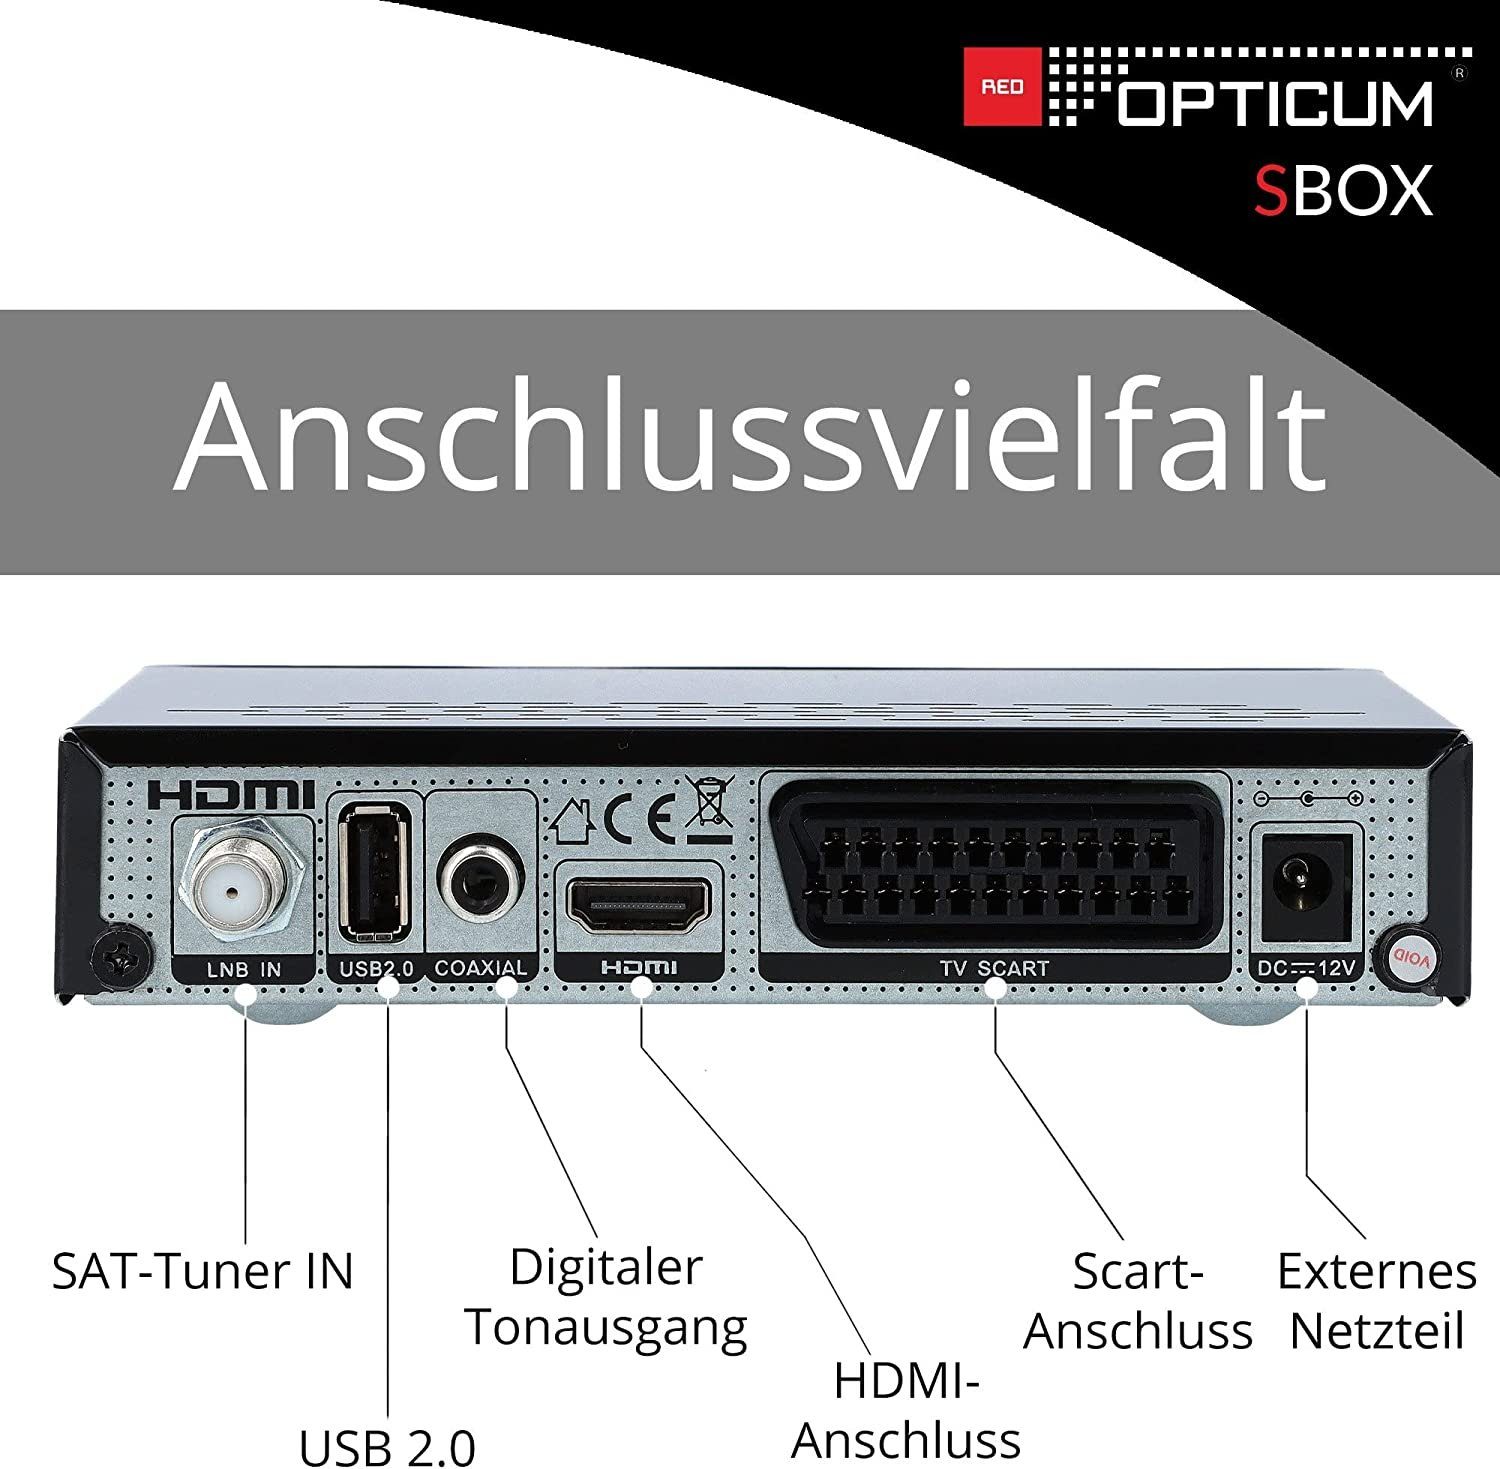 RED Timeshift - & Kabel HDMI OPTICUM Coaxial HDMI, mit USB, SAT-Receiver PVR Einkabel SBOX (PVR, + tauglich) SCART,